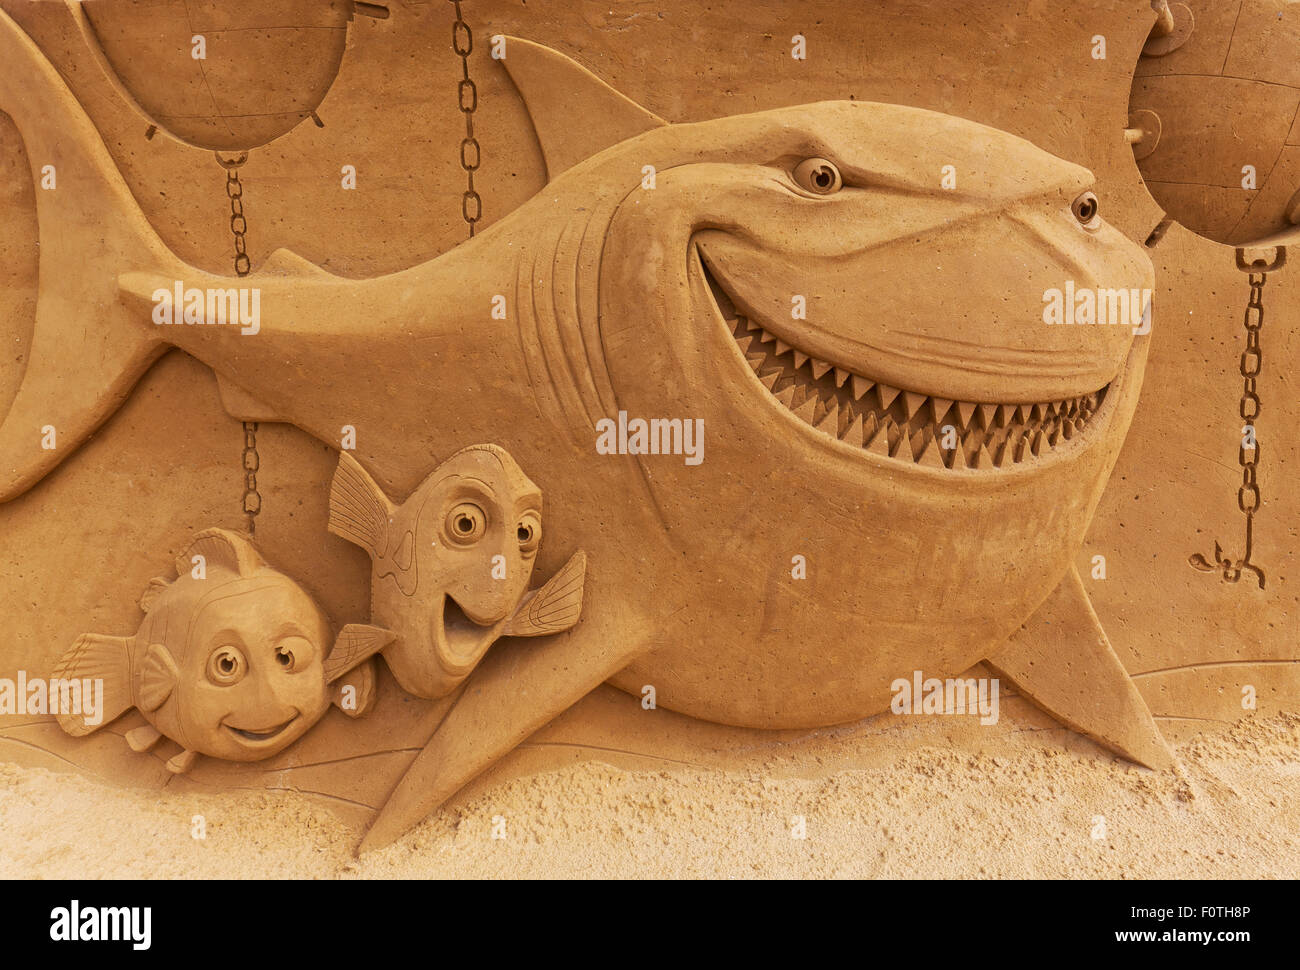 Requins et petits poissons, sculptures de sable, de trouver Némo, Festival de sculptures de sable, soleil de l'été congelé, Oostende Flandre Occidentale Banque D'Images